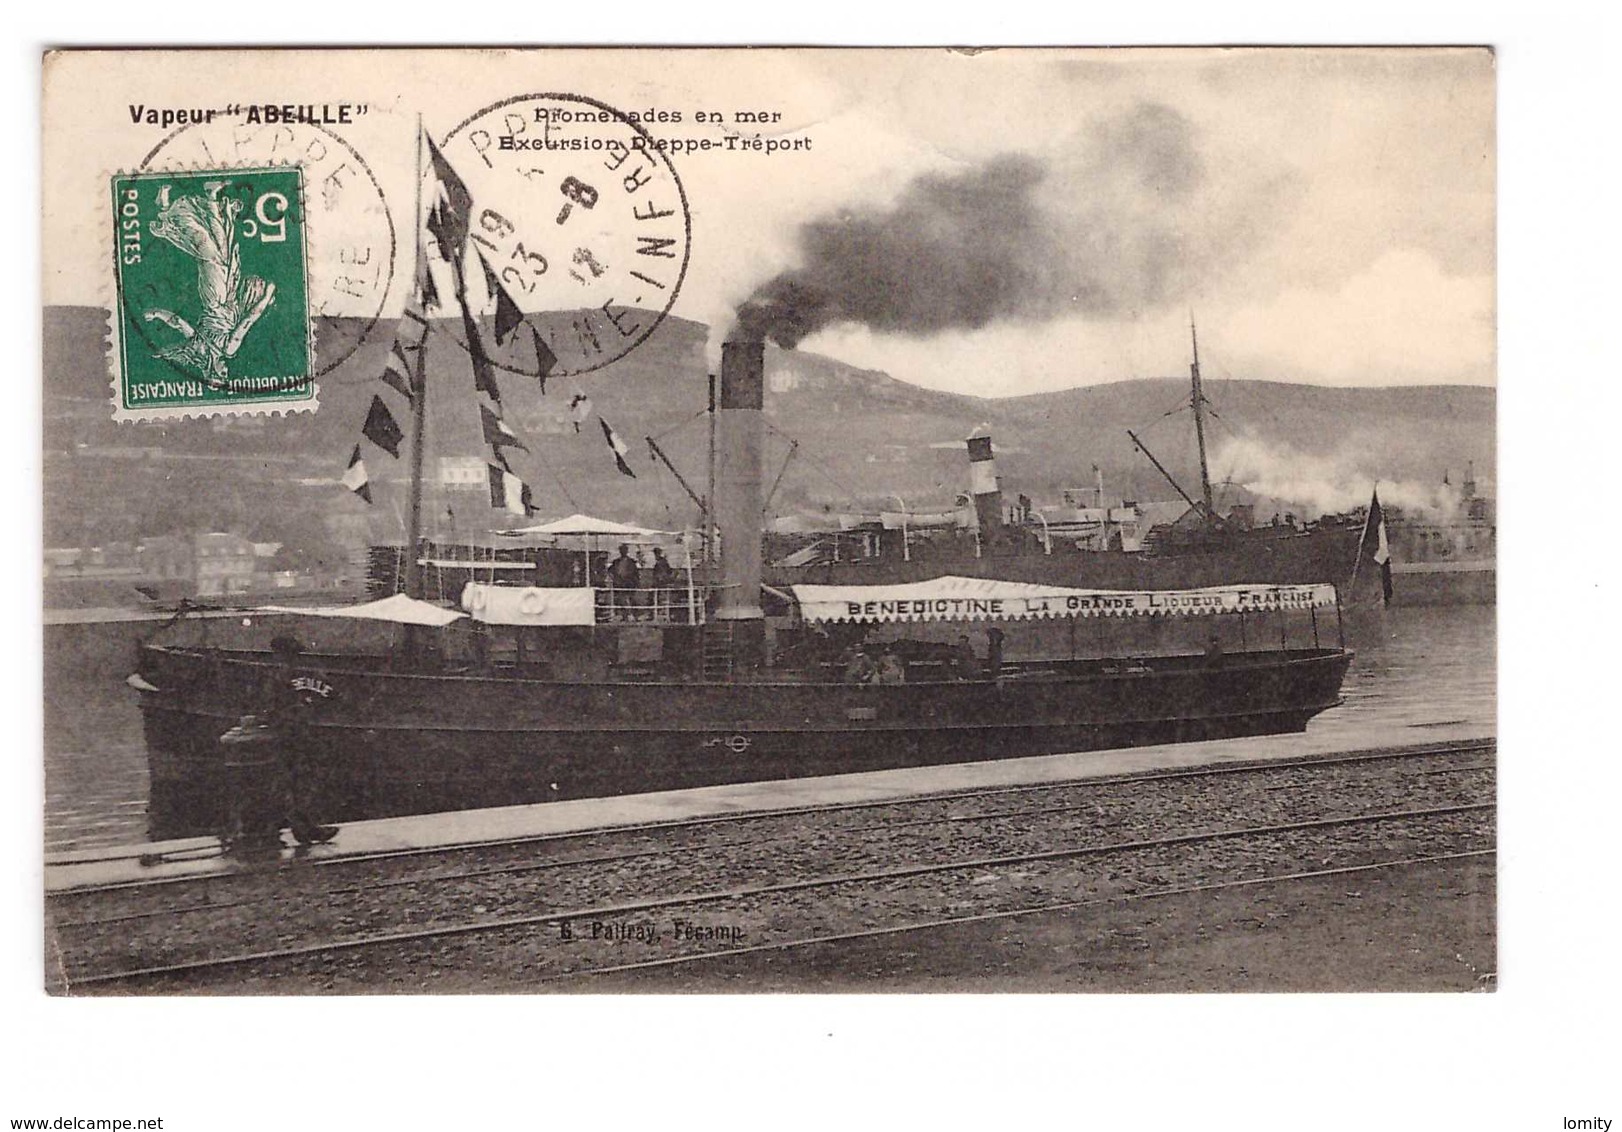 76 Bateau Vapeur Abeille Excursion Dieppe Treport  Cpa Cachet Dieppe 1912 - Dieppe